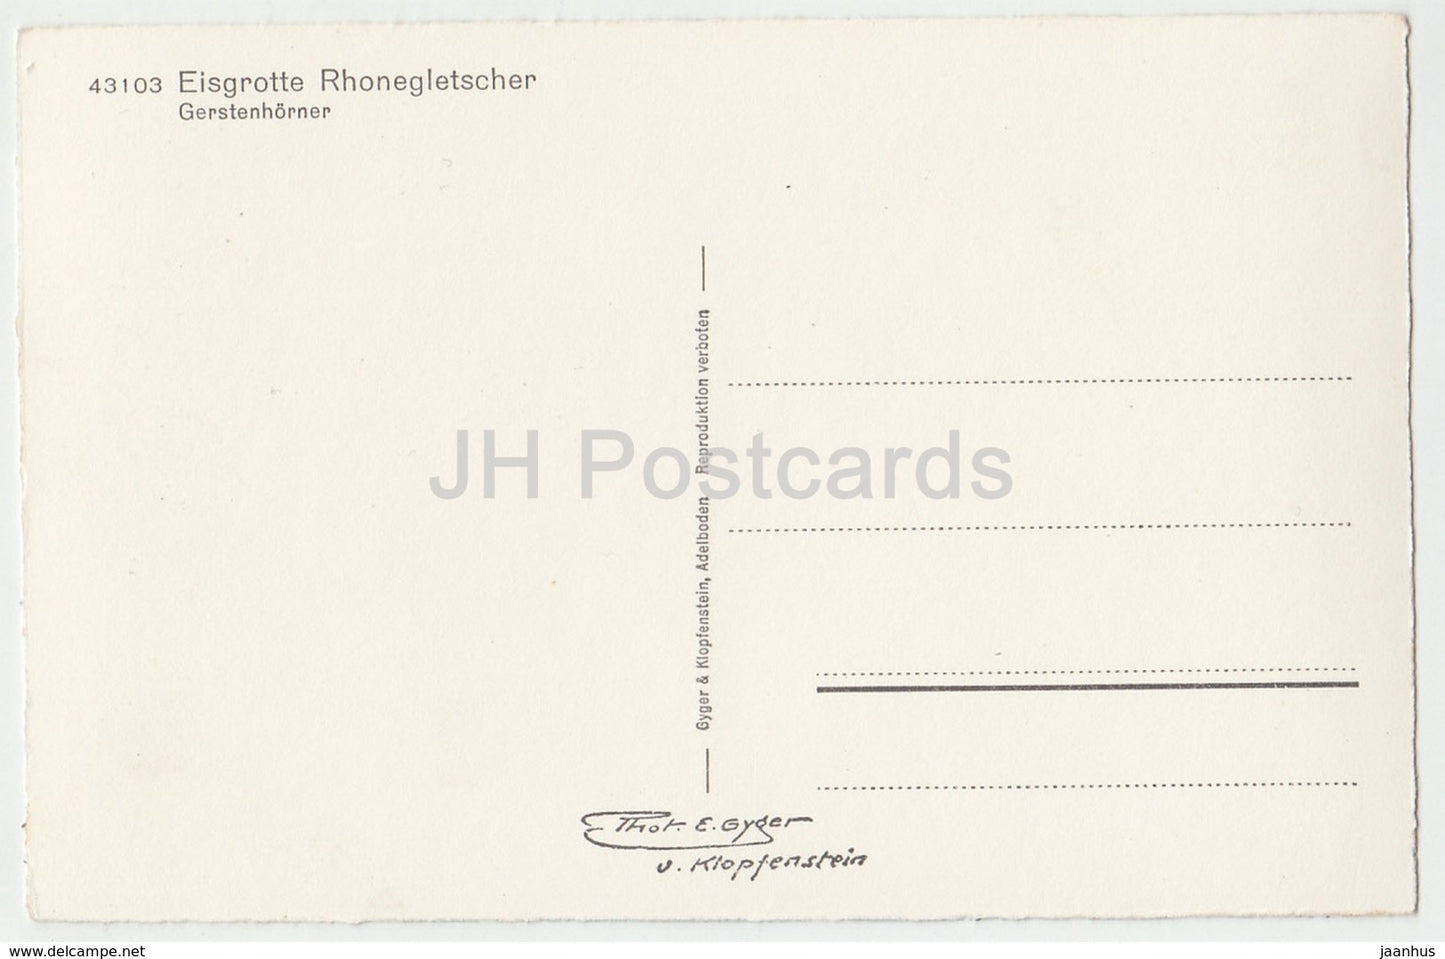 Eisgrotte Rhonegletscher - Gerstenhorner - 43103 - Schweiz - alte Postkarte - unbenutzt